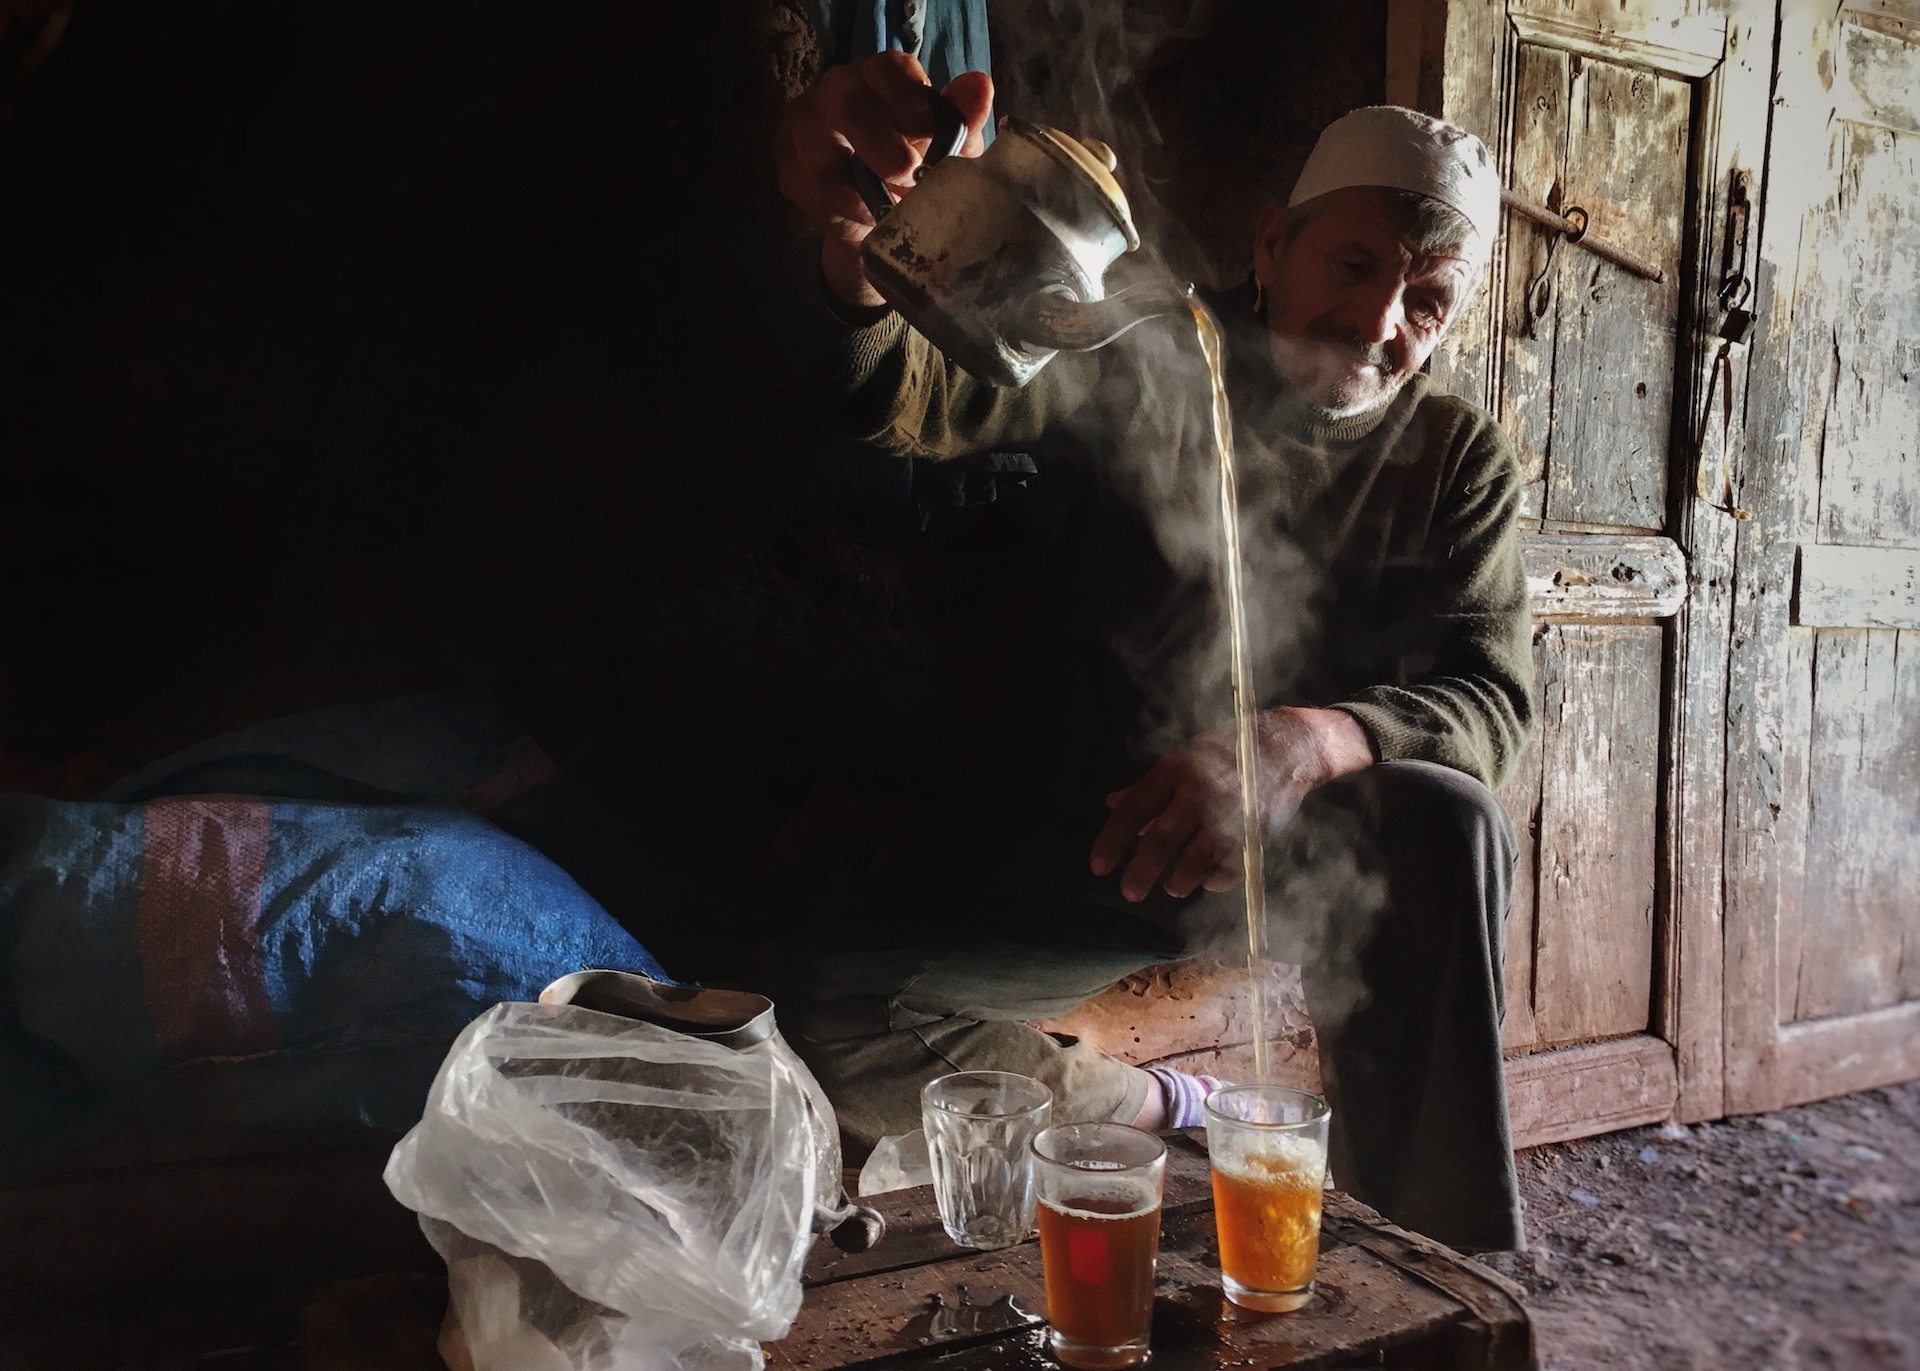 The Marrakech Salt Miner